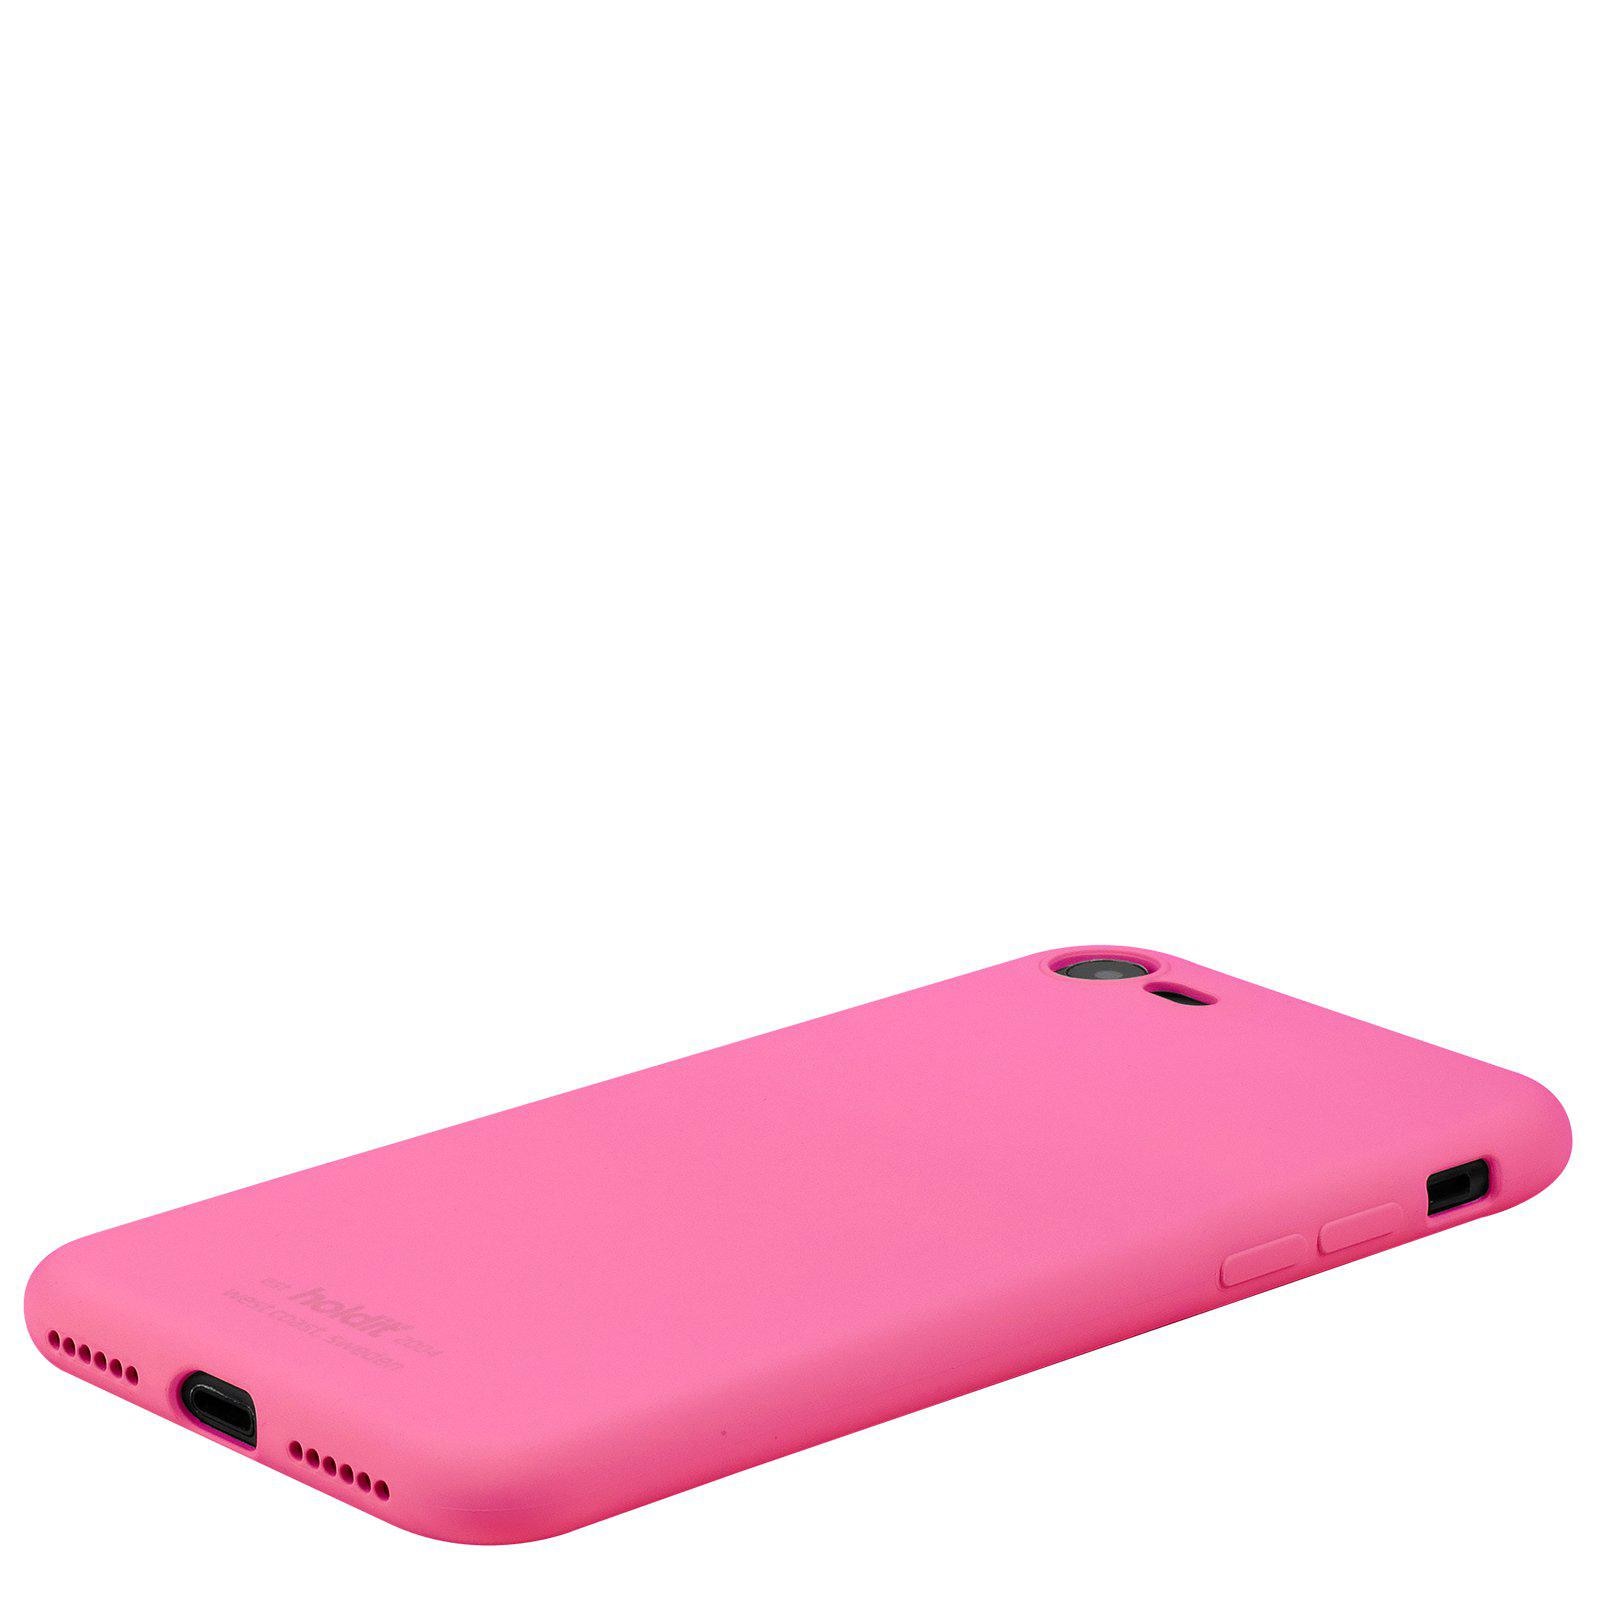 Coque en silicone iPhone 7, Bright Pink